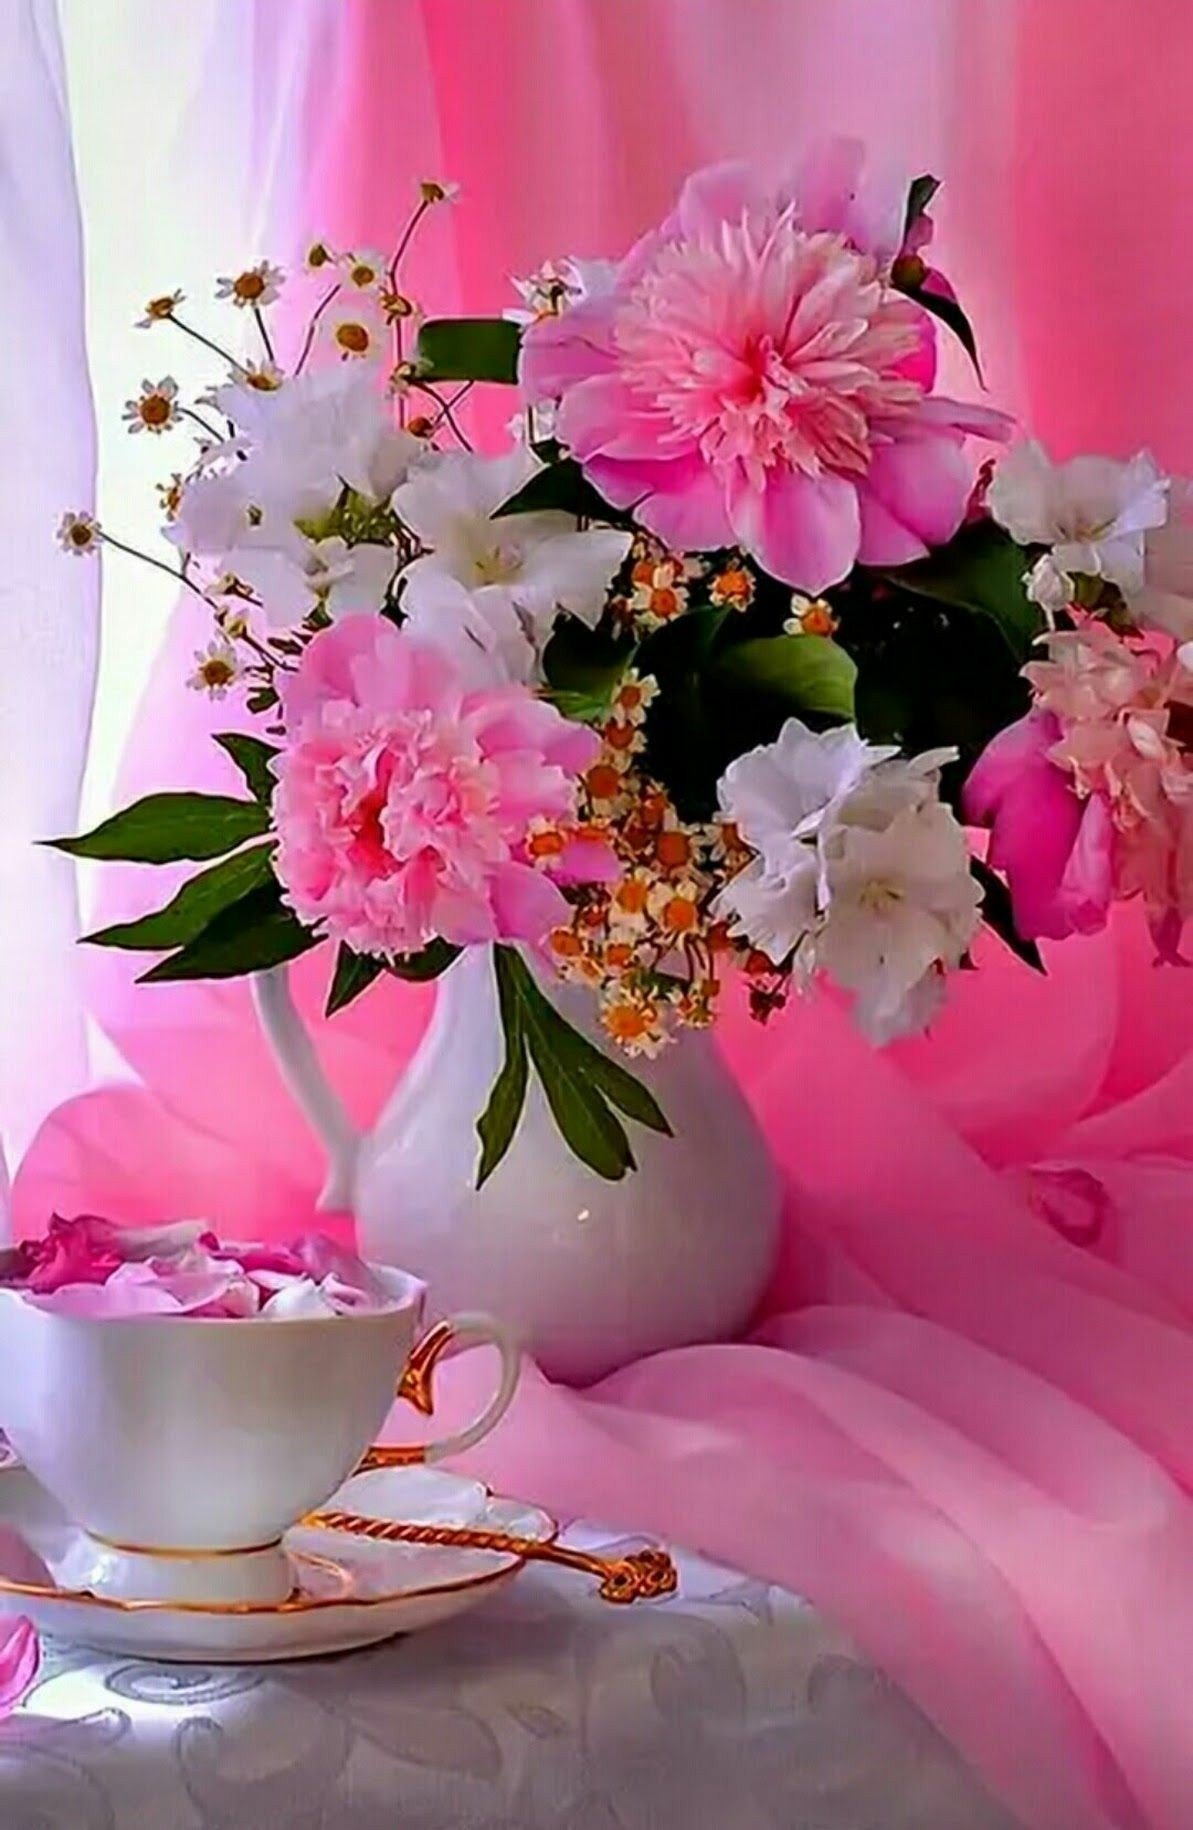 Пожелания женщине доброго утра видео. Красивые и добрые пожелания с добрым утром. Пожелания с добрым утром с красивыми цветами. Доброе утро с цветами и пожеланиями. Поздравление с добрым утром с цветами.